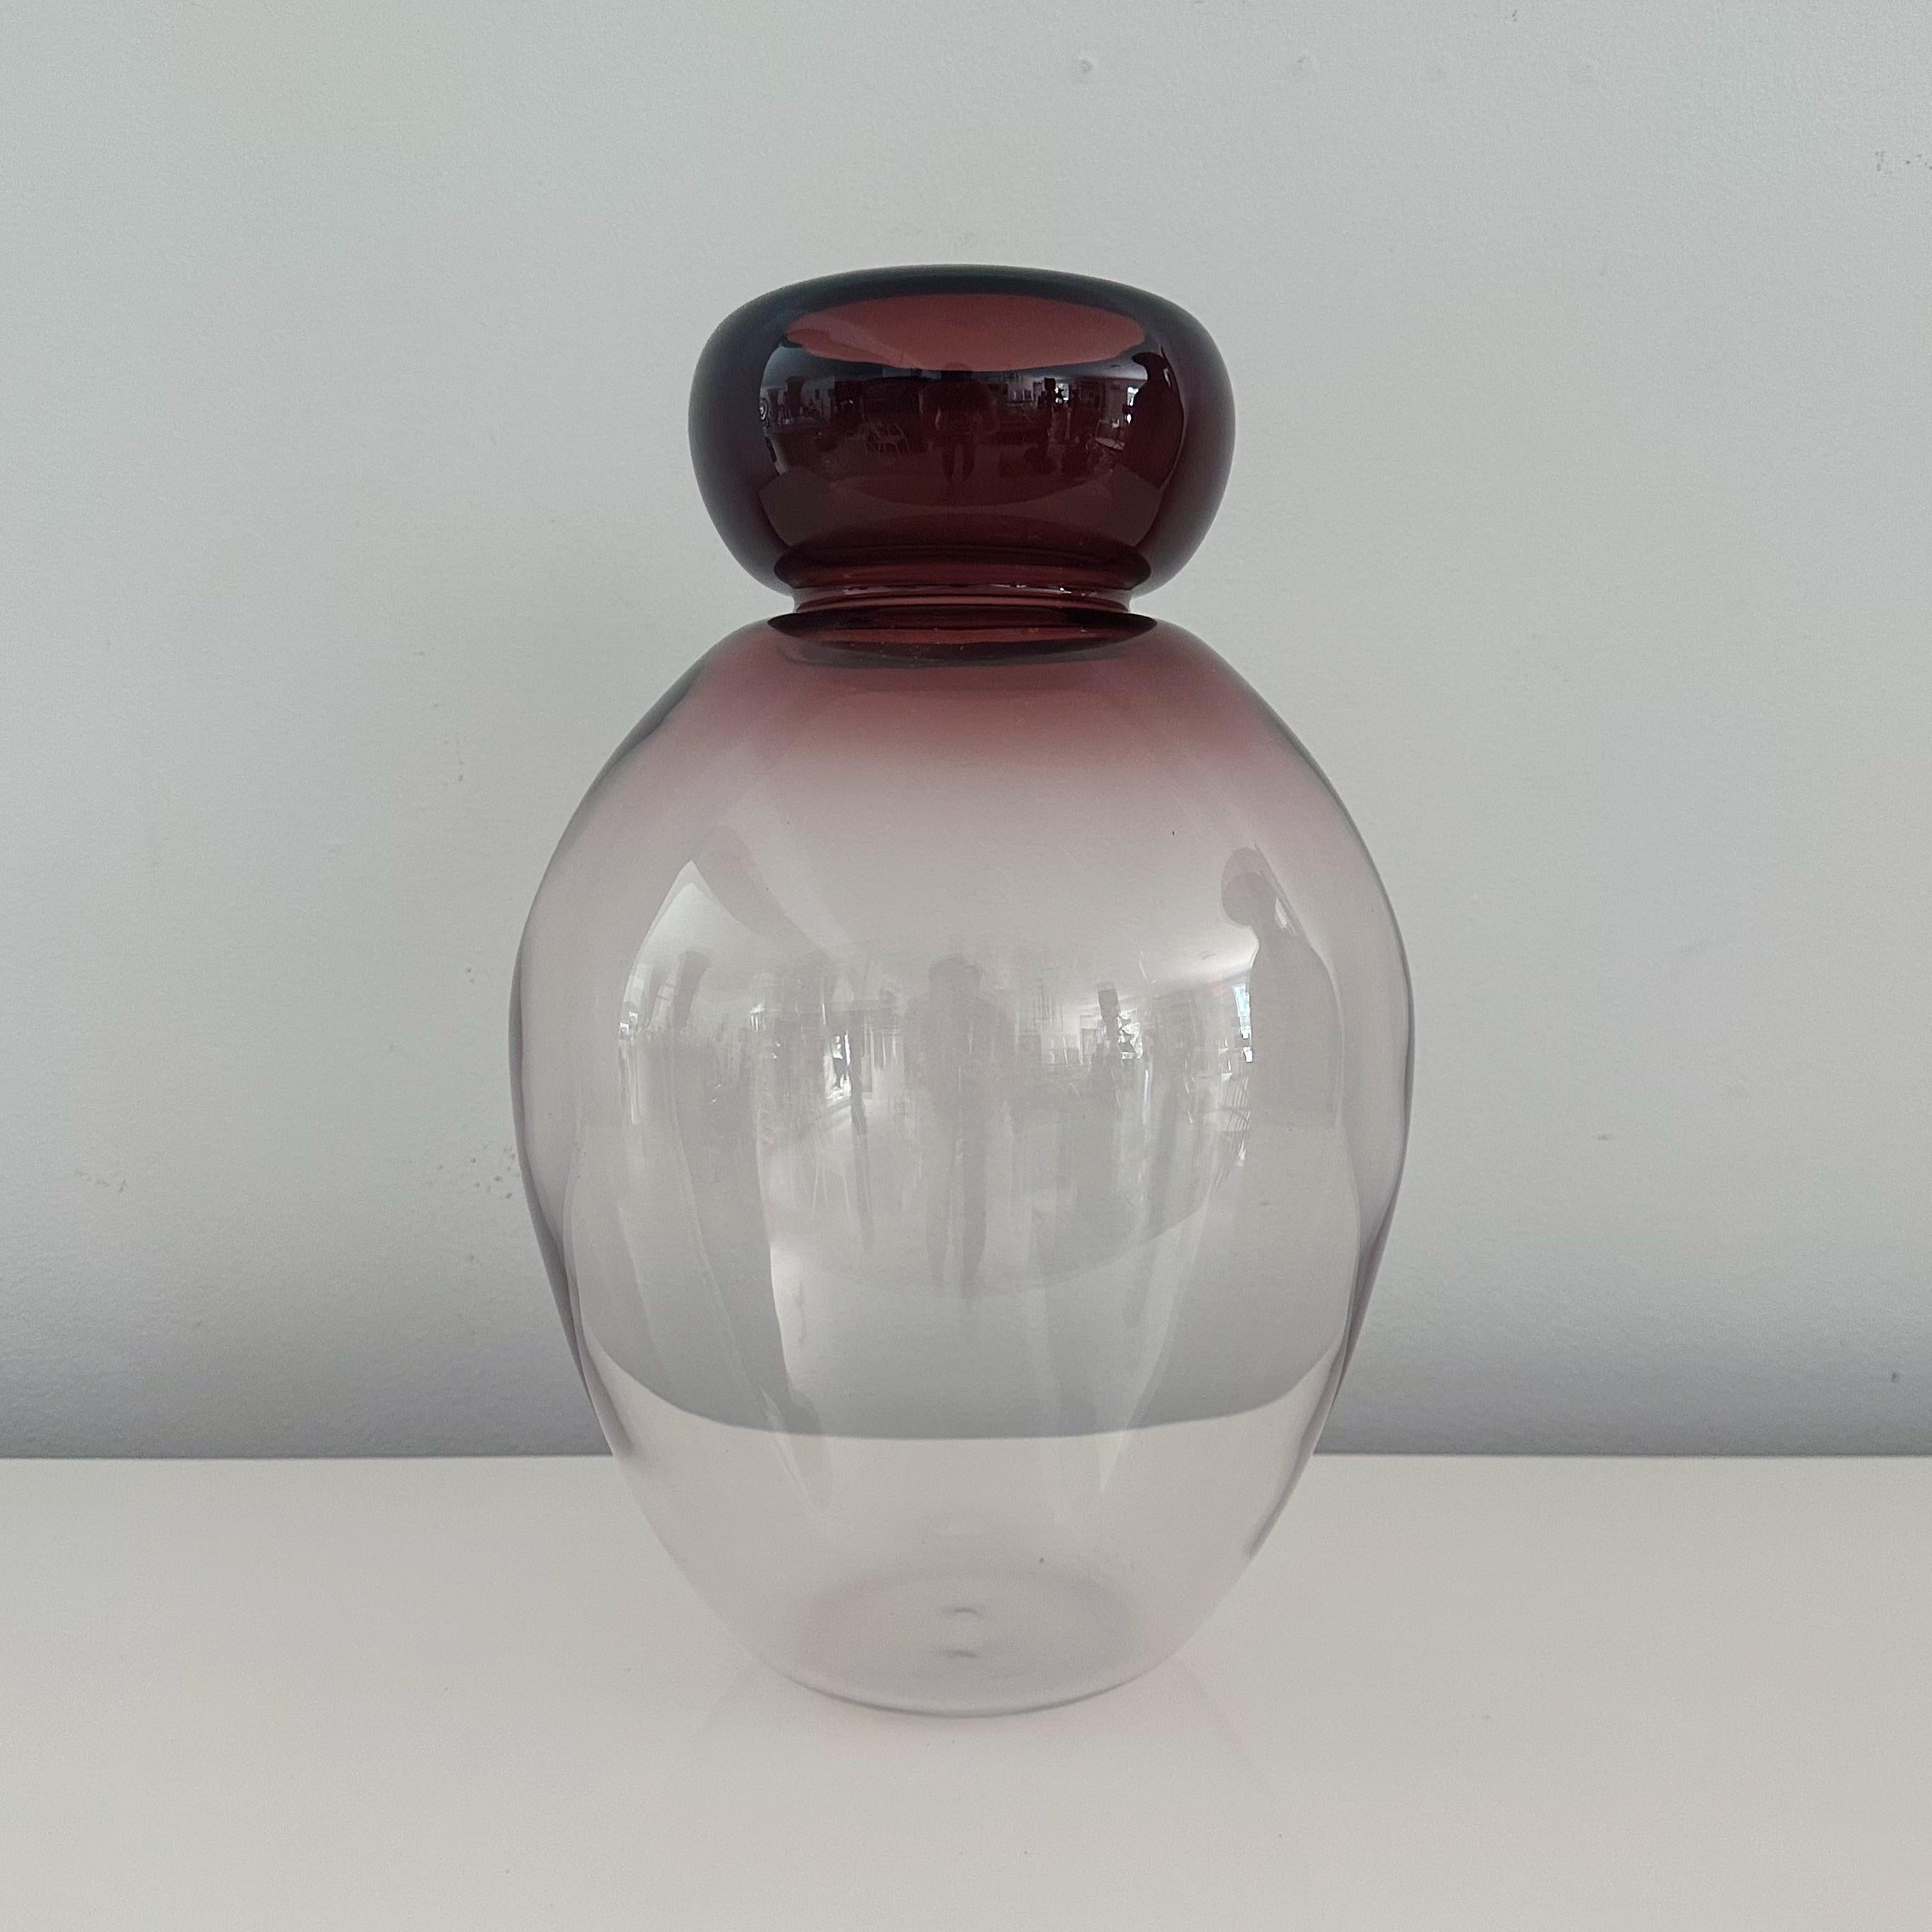 Le vase de Murano présente de grandes formes bulbeuses dans des nuances captivantes de canneberge qui passent progressivement à un verre transparent. Signé 